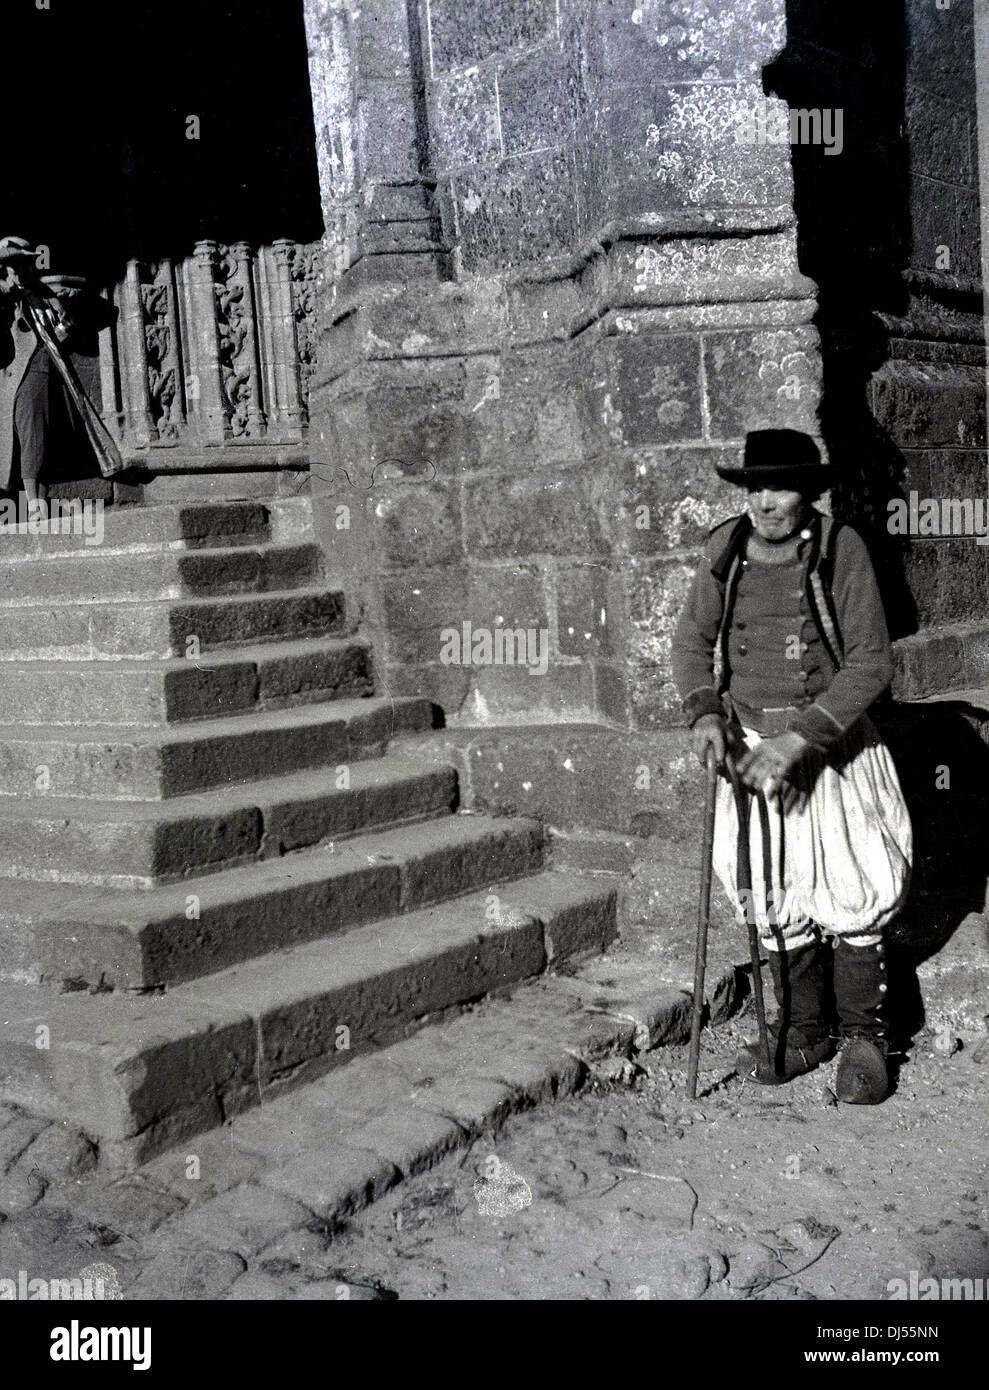 Foto storica del 1930s che mostra un anziano uomo locale vestito in costume tradizionale di pantaloni lunghi al ginocchio e tunica, in piedi con un bastone per scalini di pietra di una chiesa di Liegi, Belgio. Foto Stock